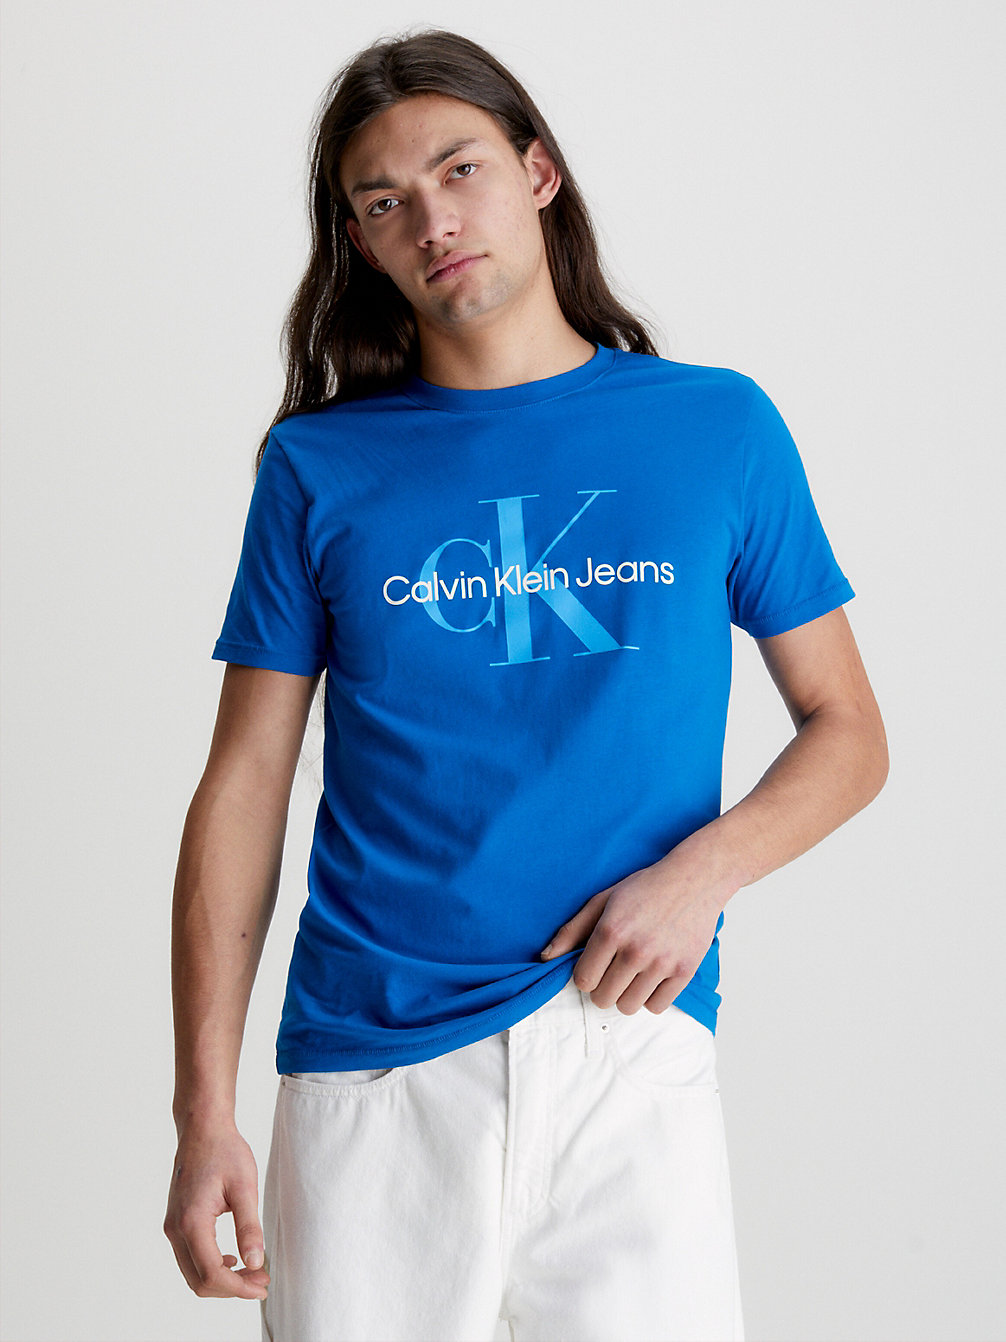 TARPS BLUE > Облегающая футболка из органического хлопка с логотипом > undefined женщины - Calvin Klein